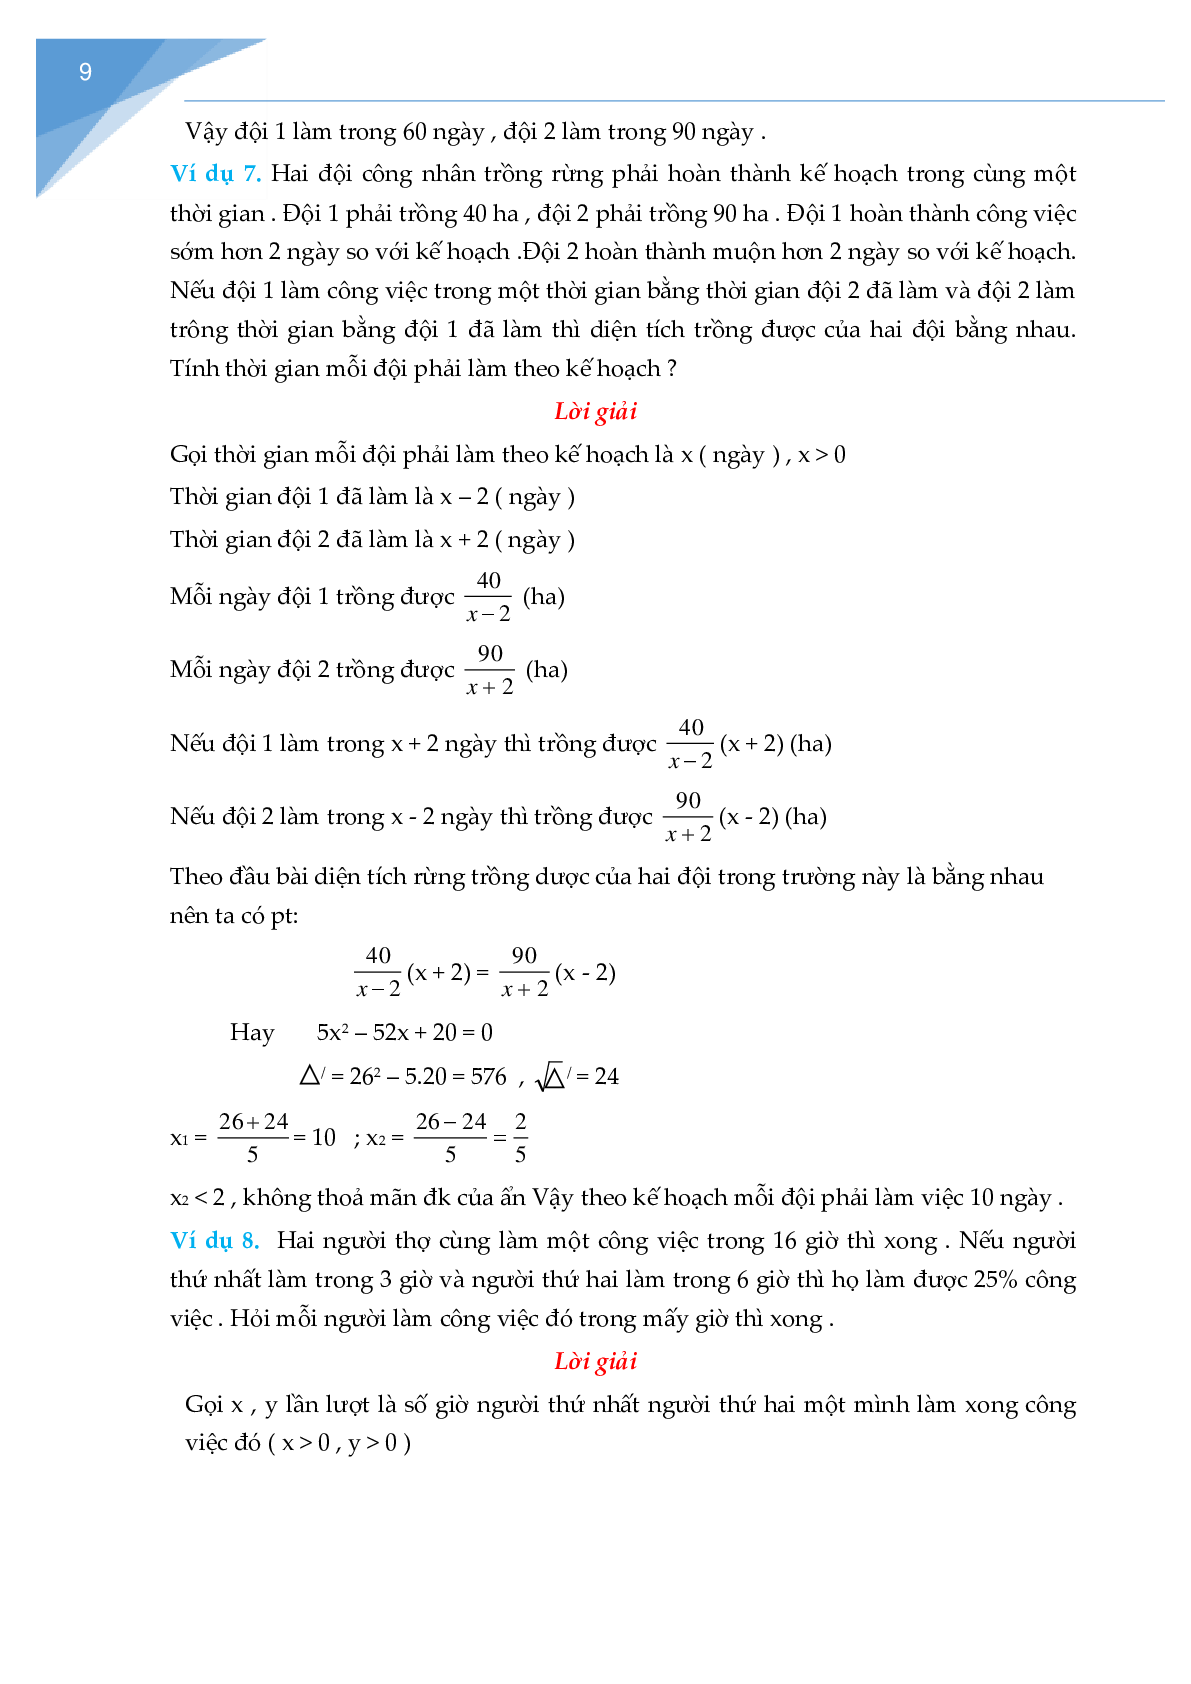 Giải bài toán bằng cách lập phương trình, hệ phương trình Toán 9 (trang 9)